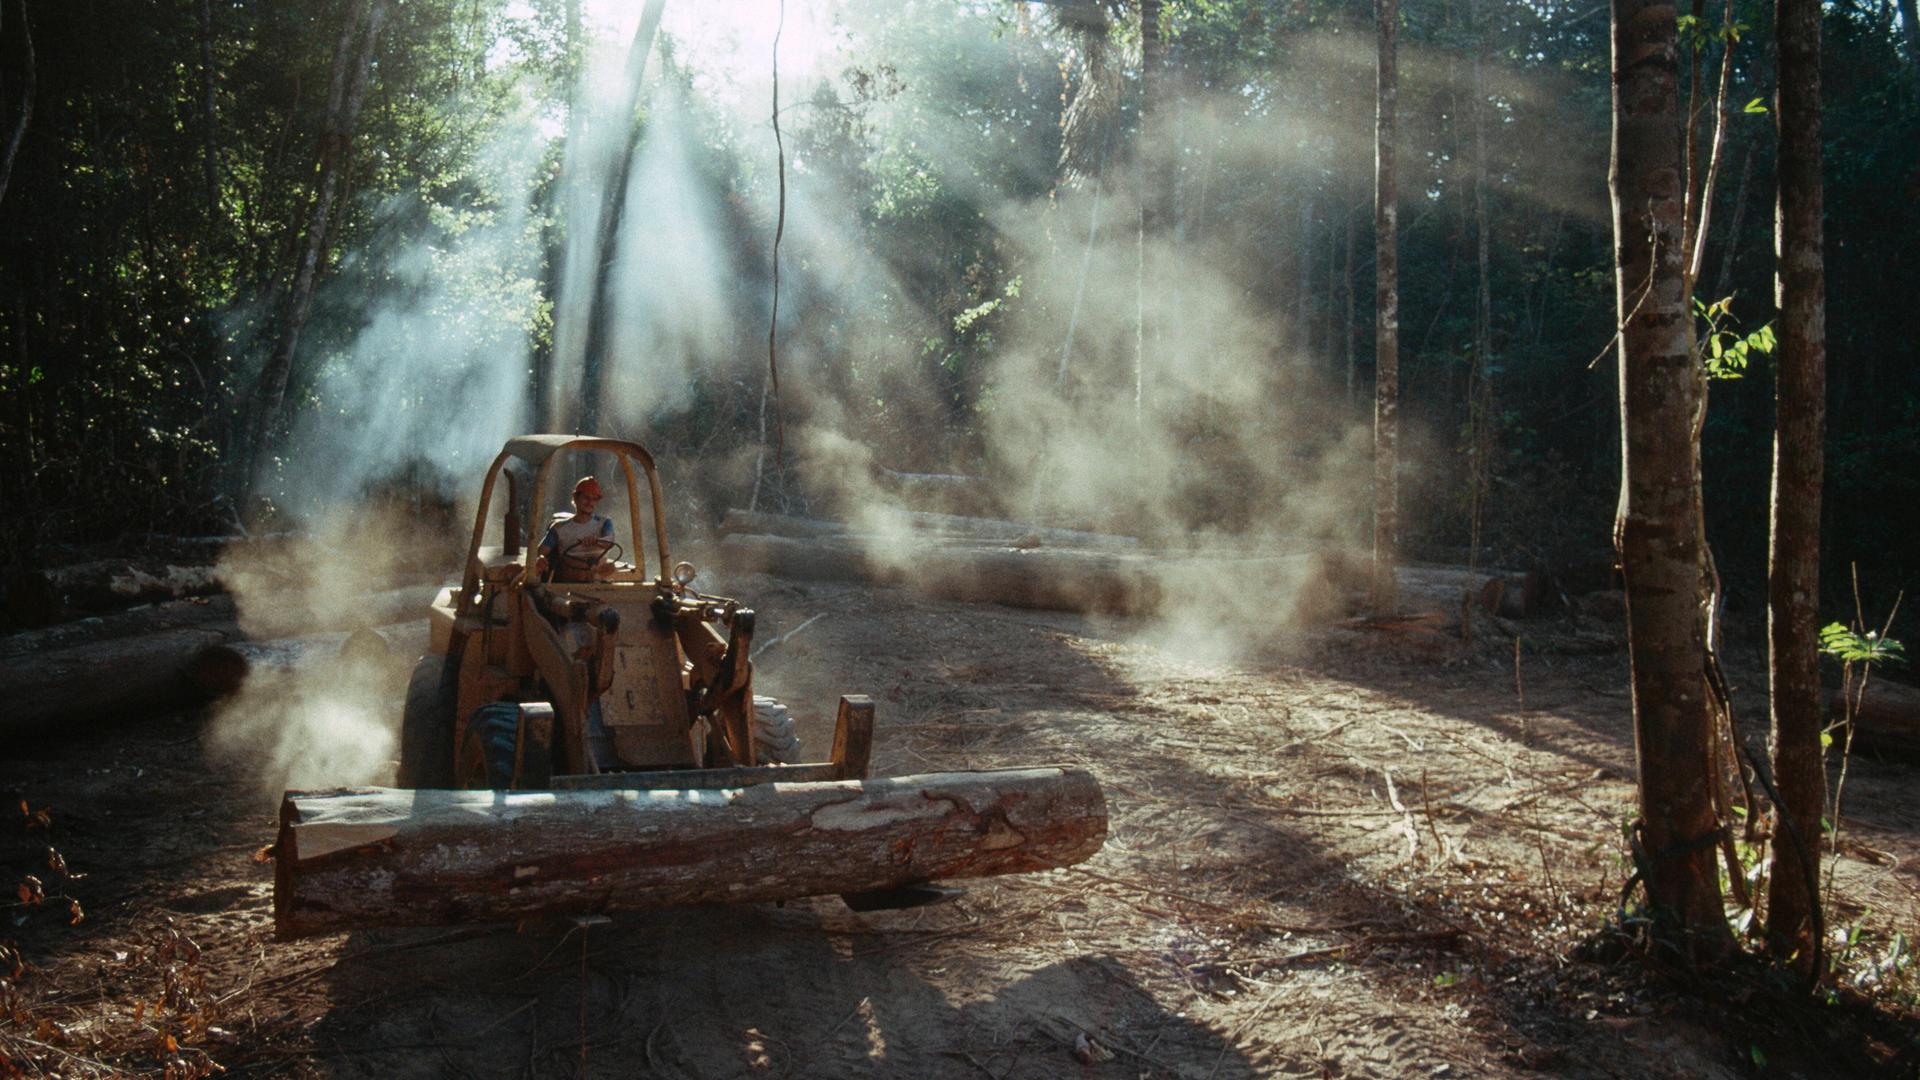 Auf einer sonnendurchfluteten Waldlichtung transportiert ein Arbeiter mit Hilfe einer Baggerschaufel einen großen gefällten Baumstamm.